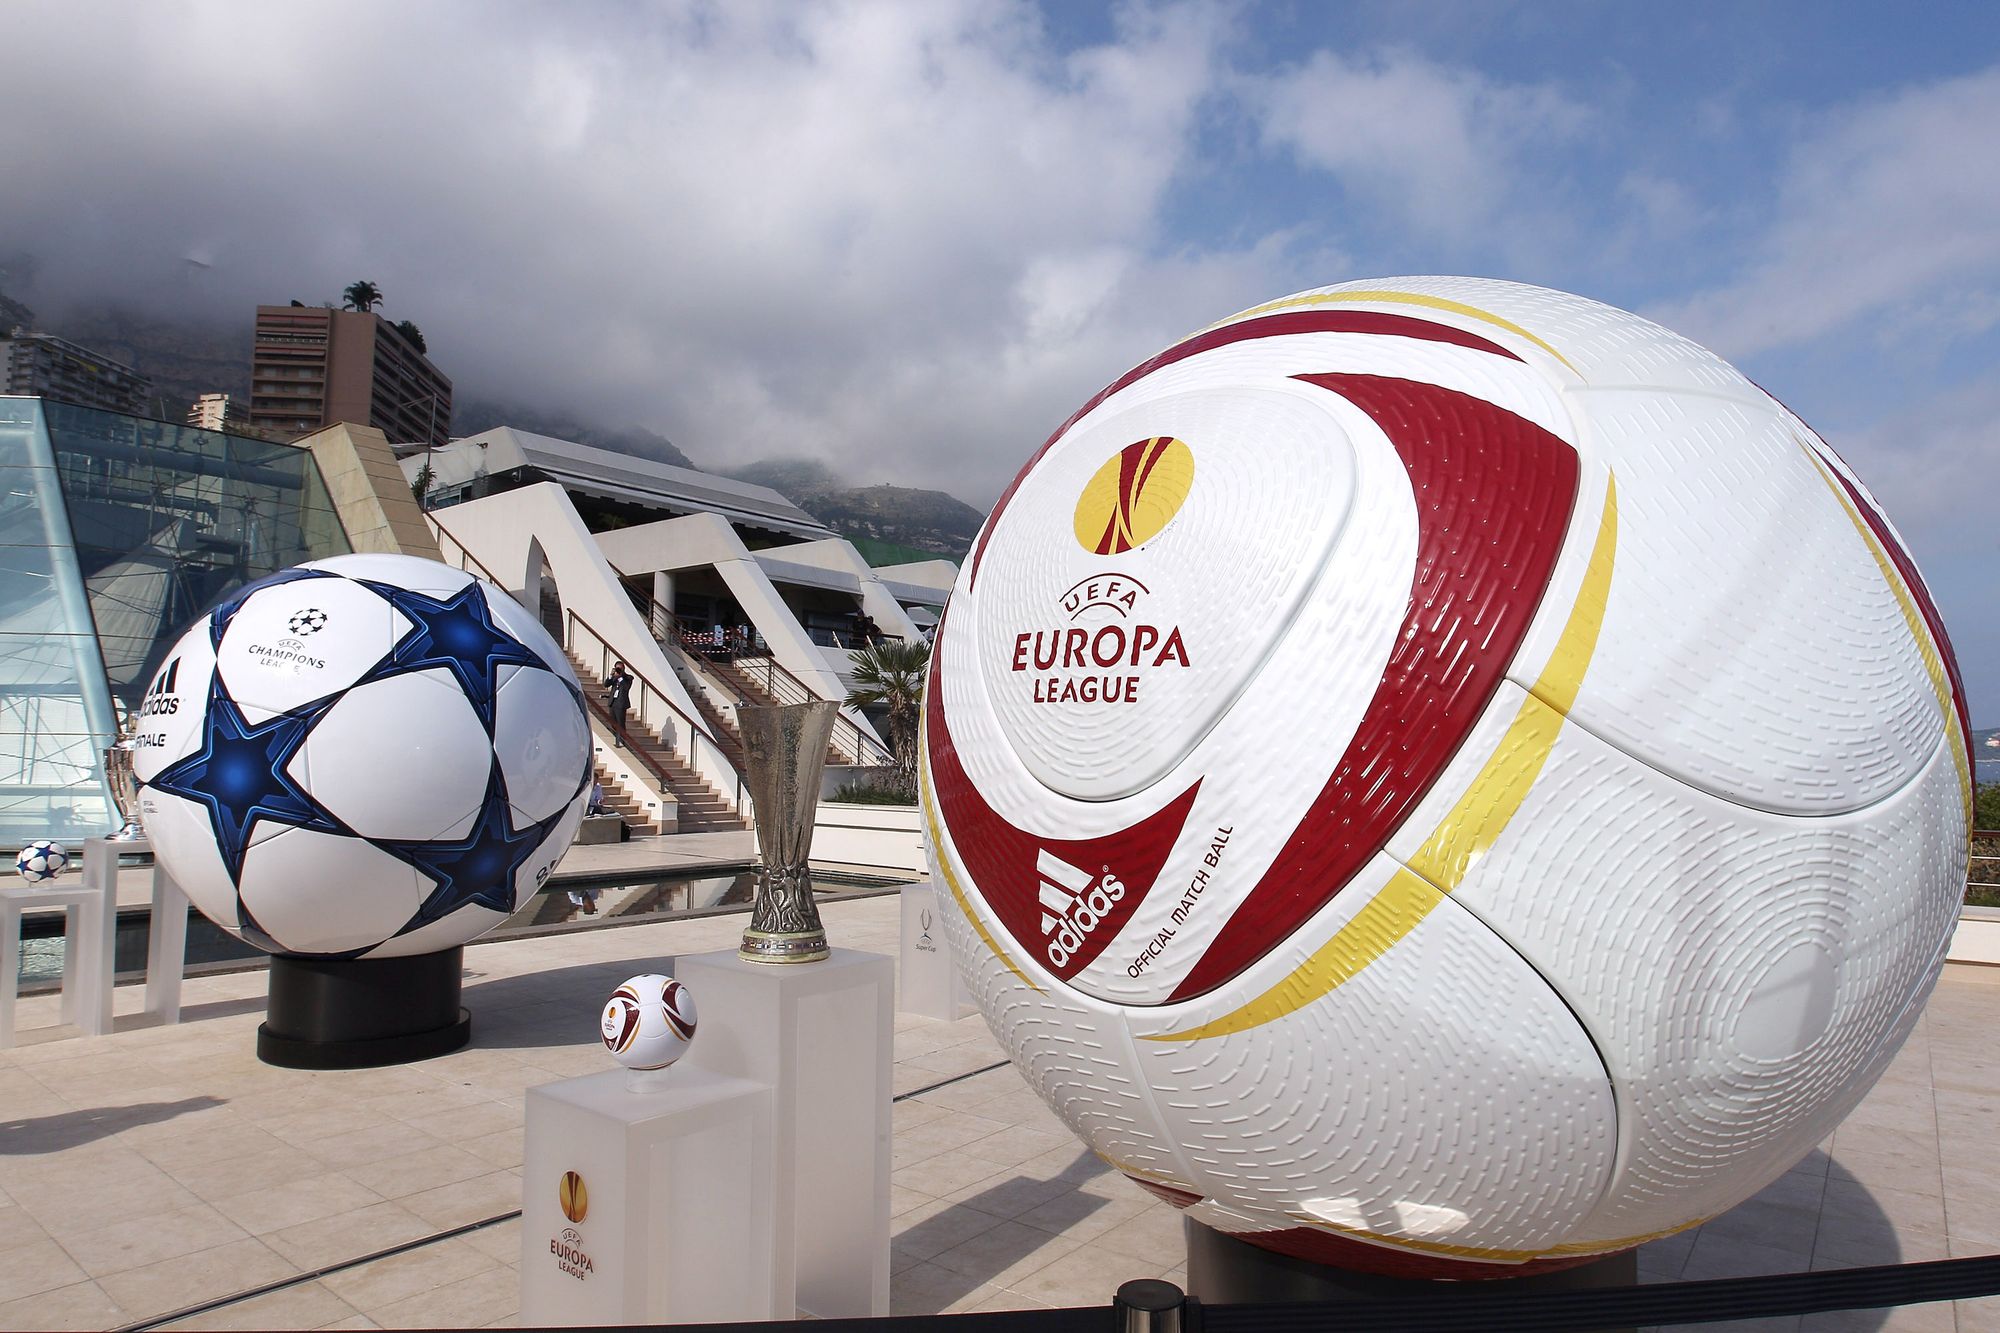 UEFA Europa League: Where Underdogs Rise